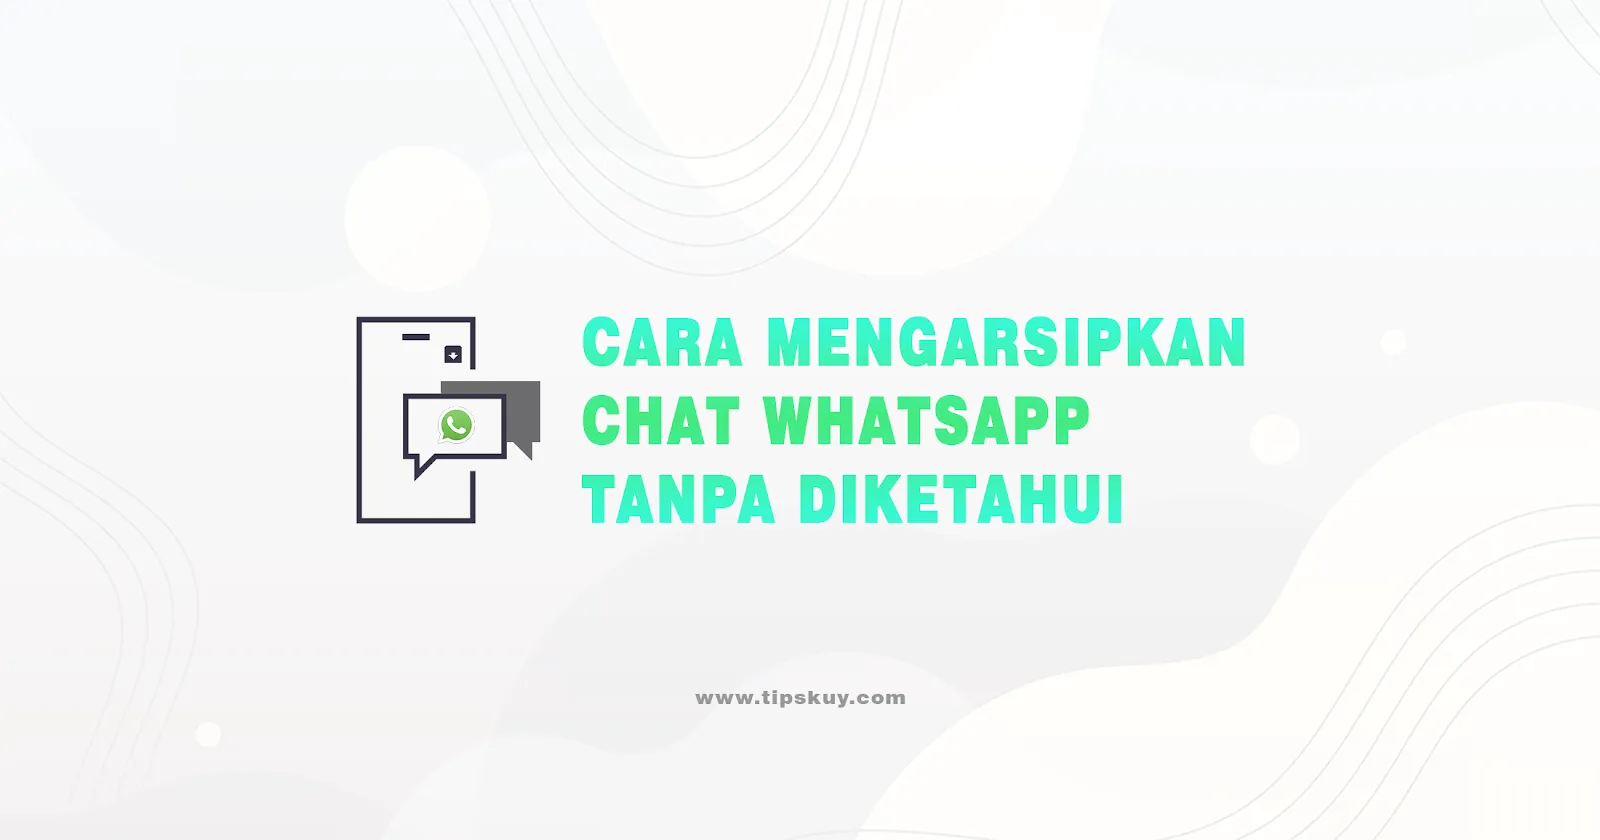 Cara Mengarsipkan Chat WhatsApp Tanpa Diketahui